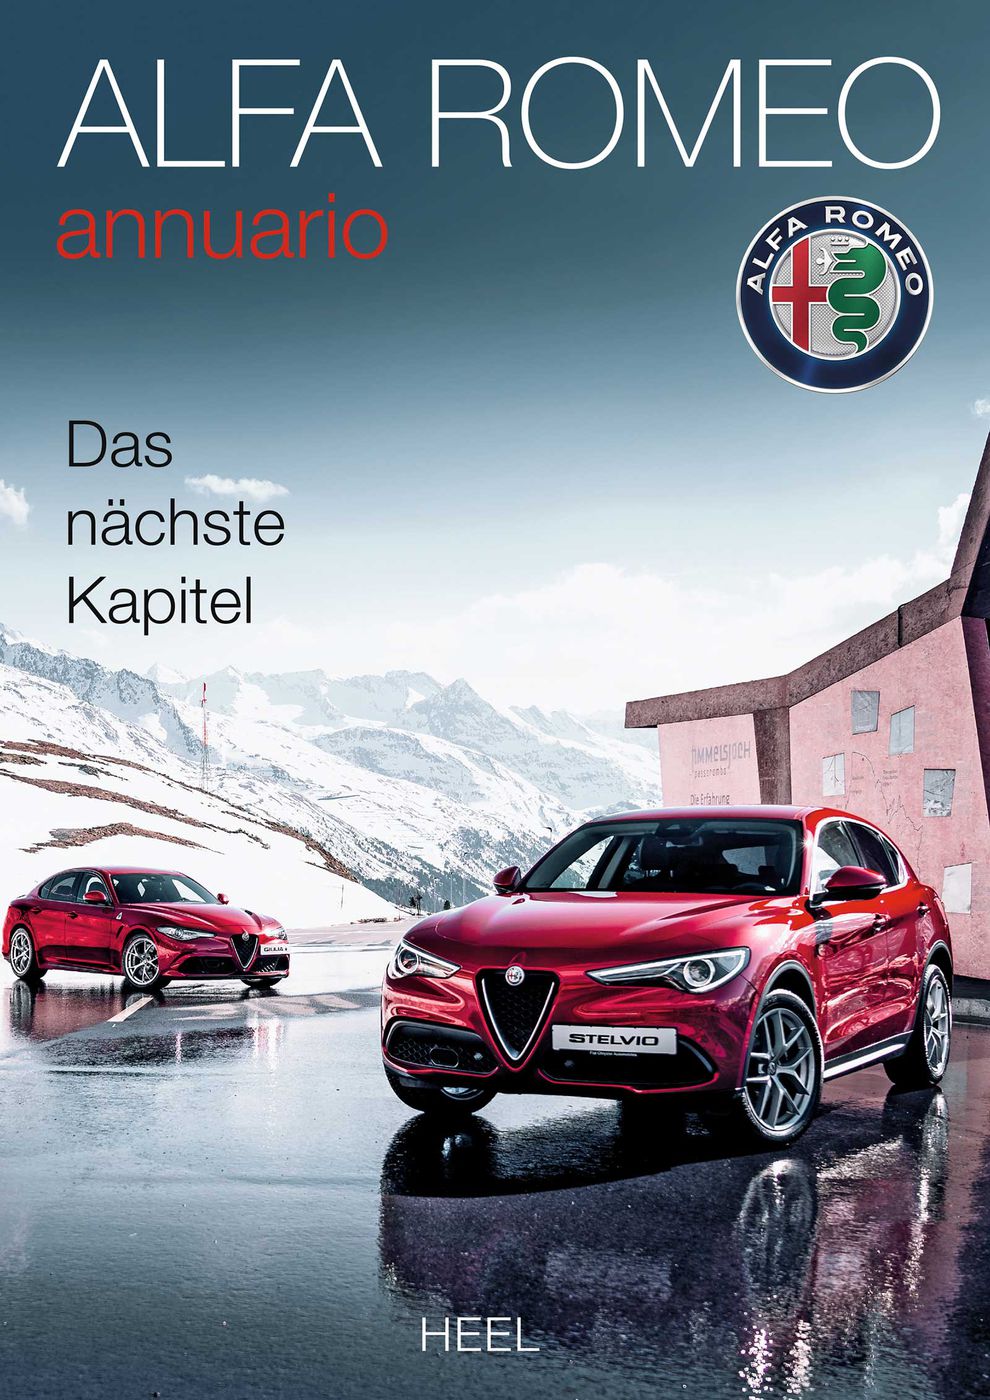 Alfa Romeo annuario 2017